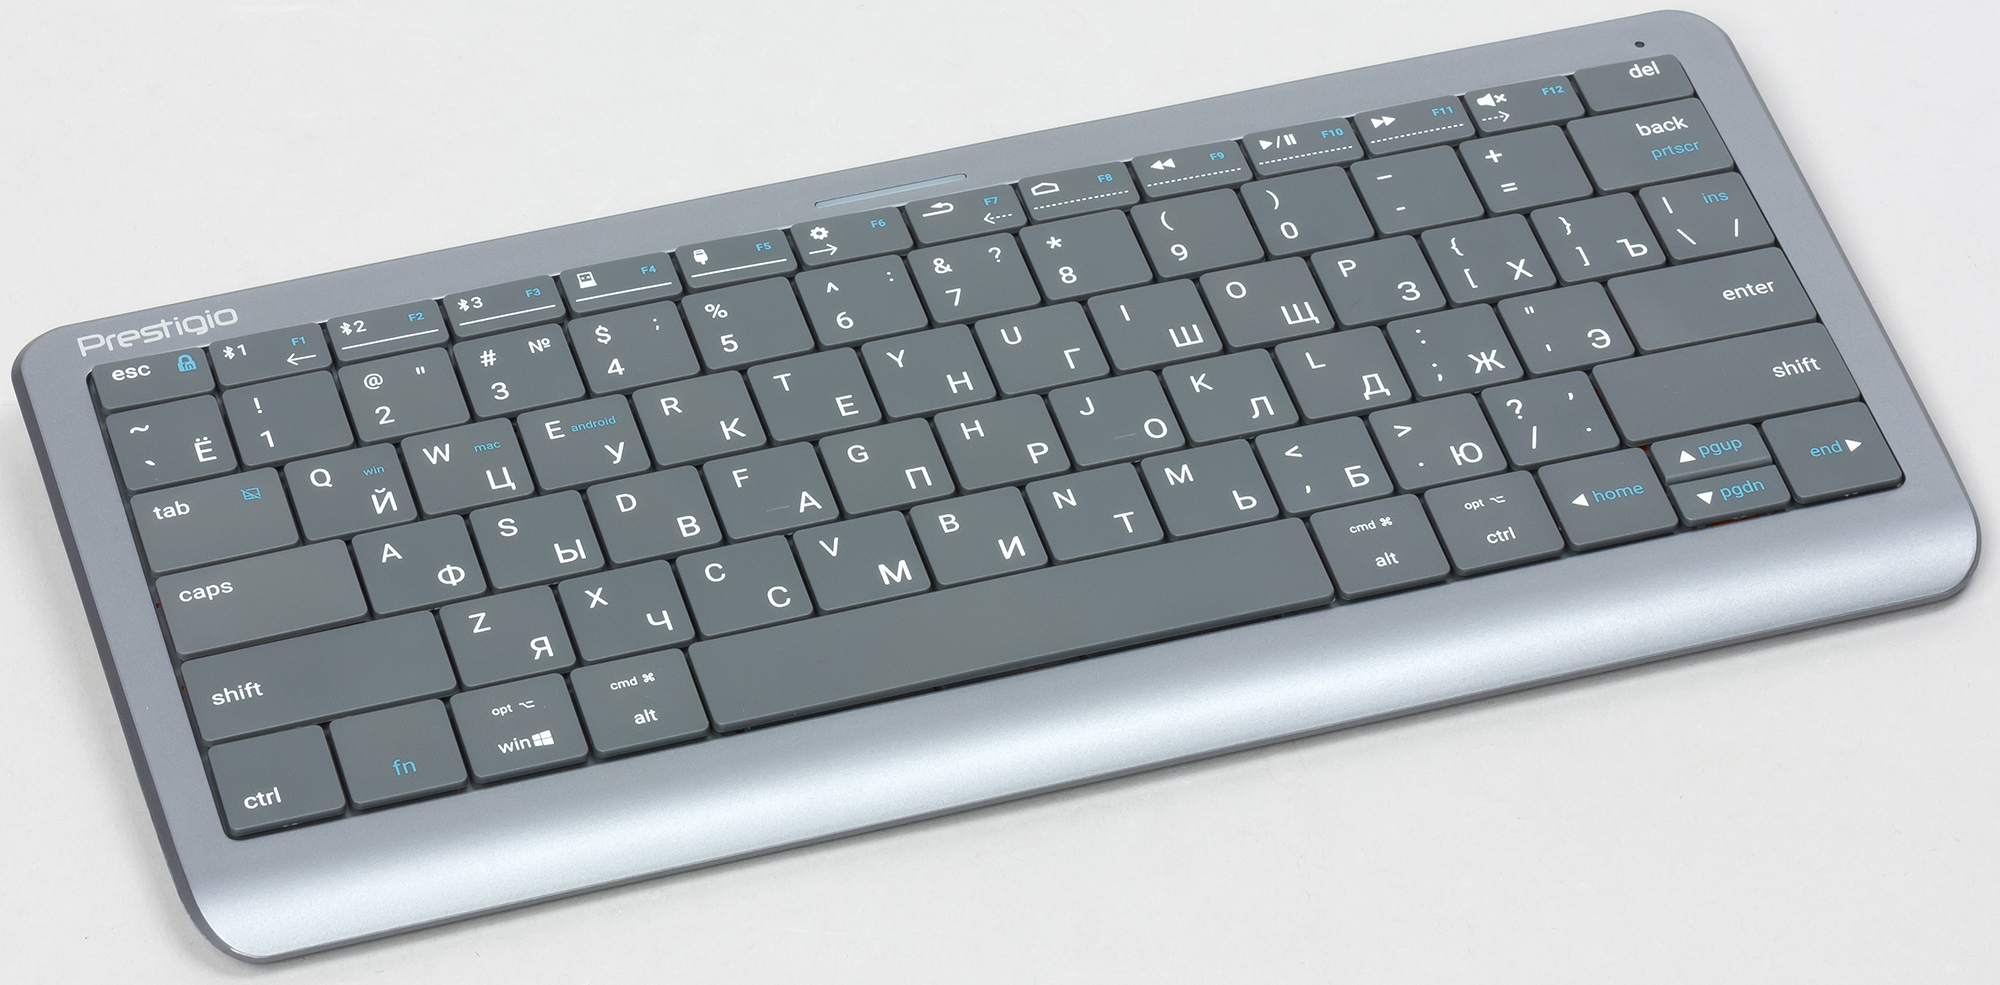 Обзор удачного гибрида беспроводной клавиатуры с тачпадом Prestigio Click&Touch на базе новых технологий